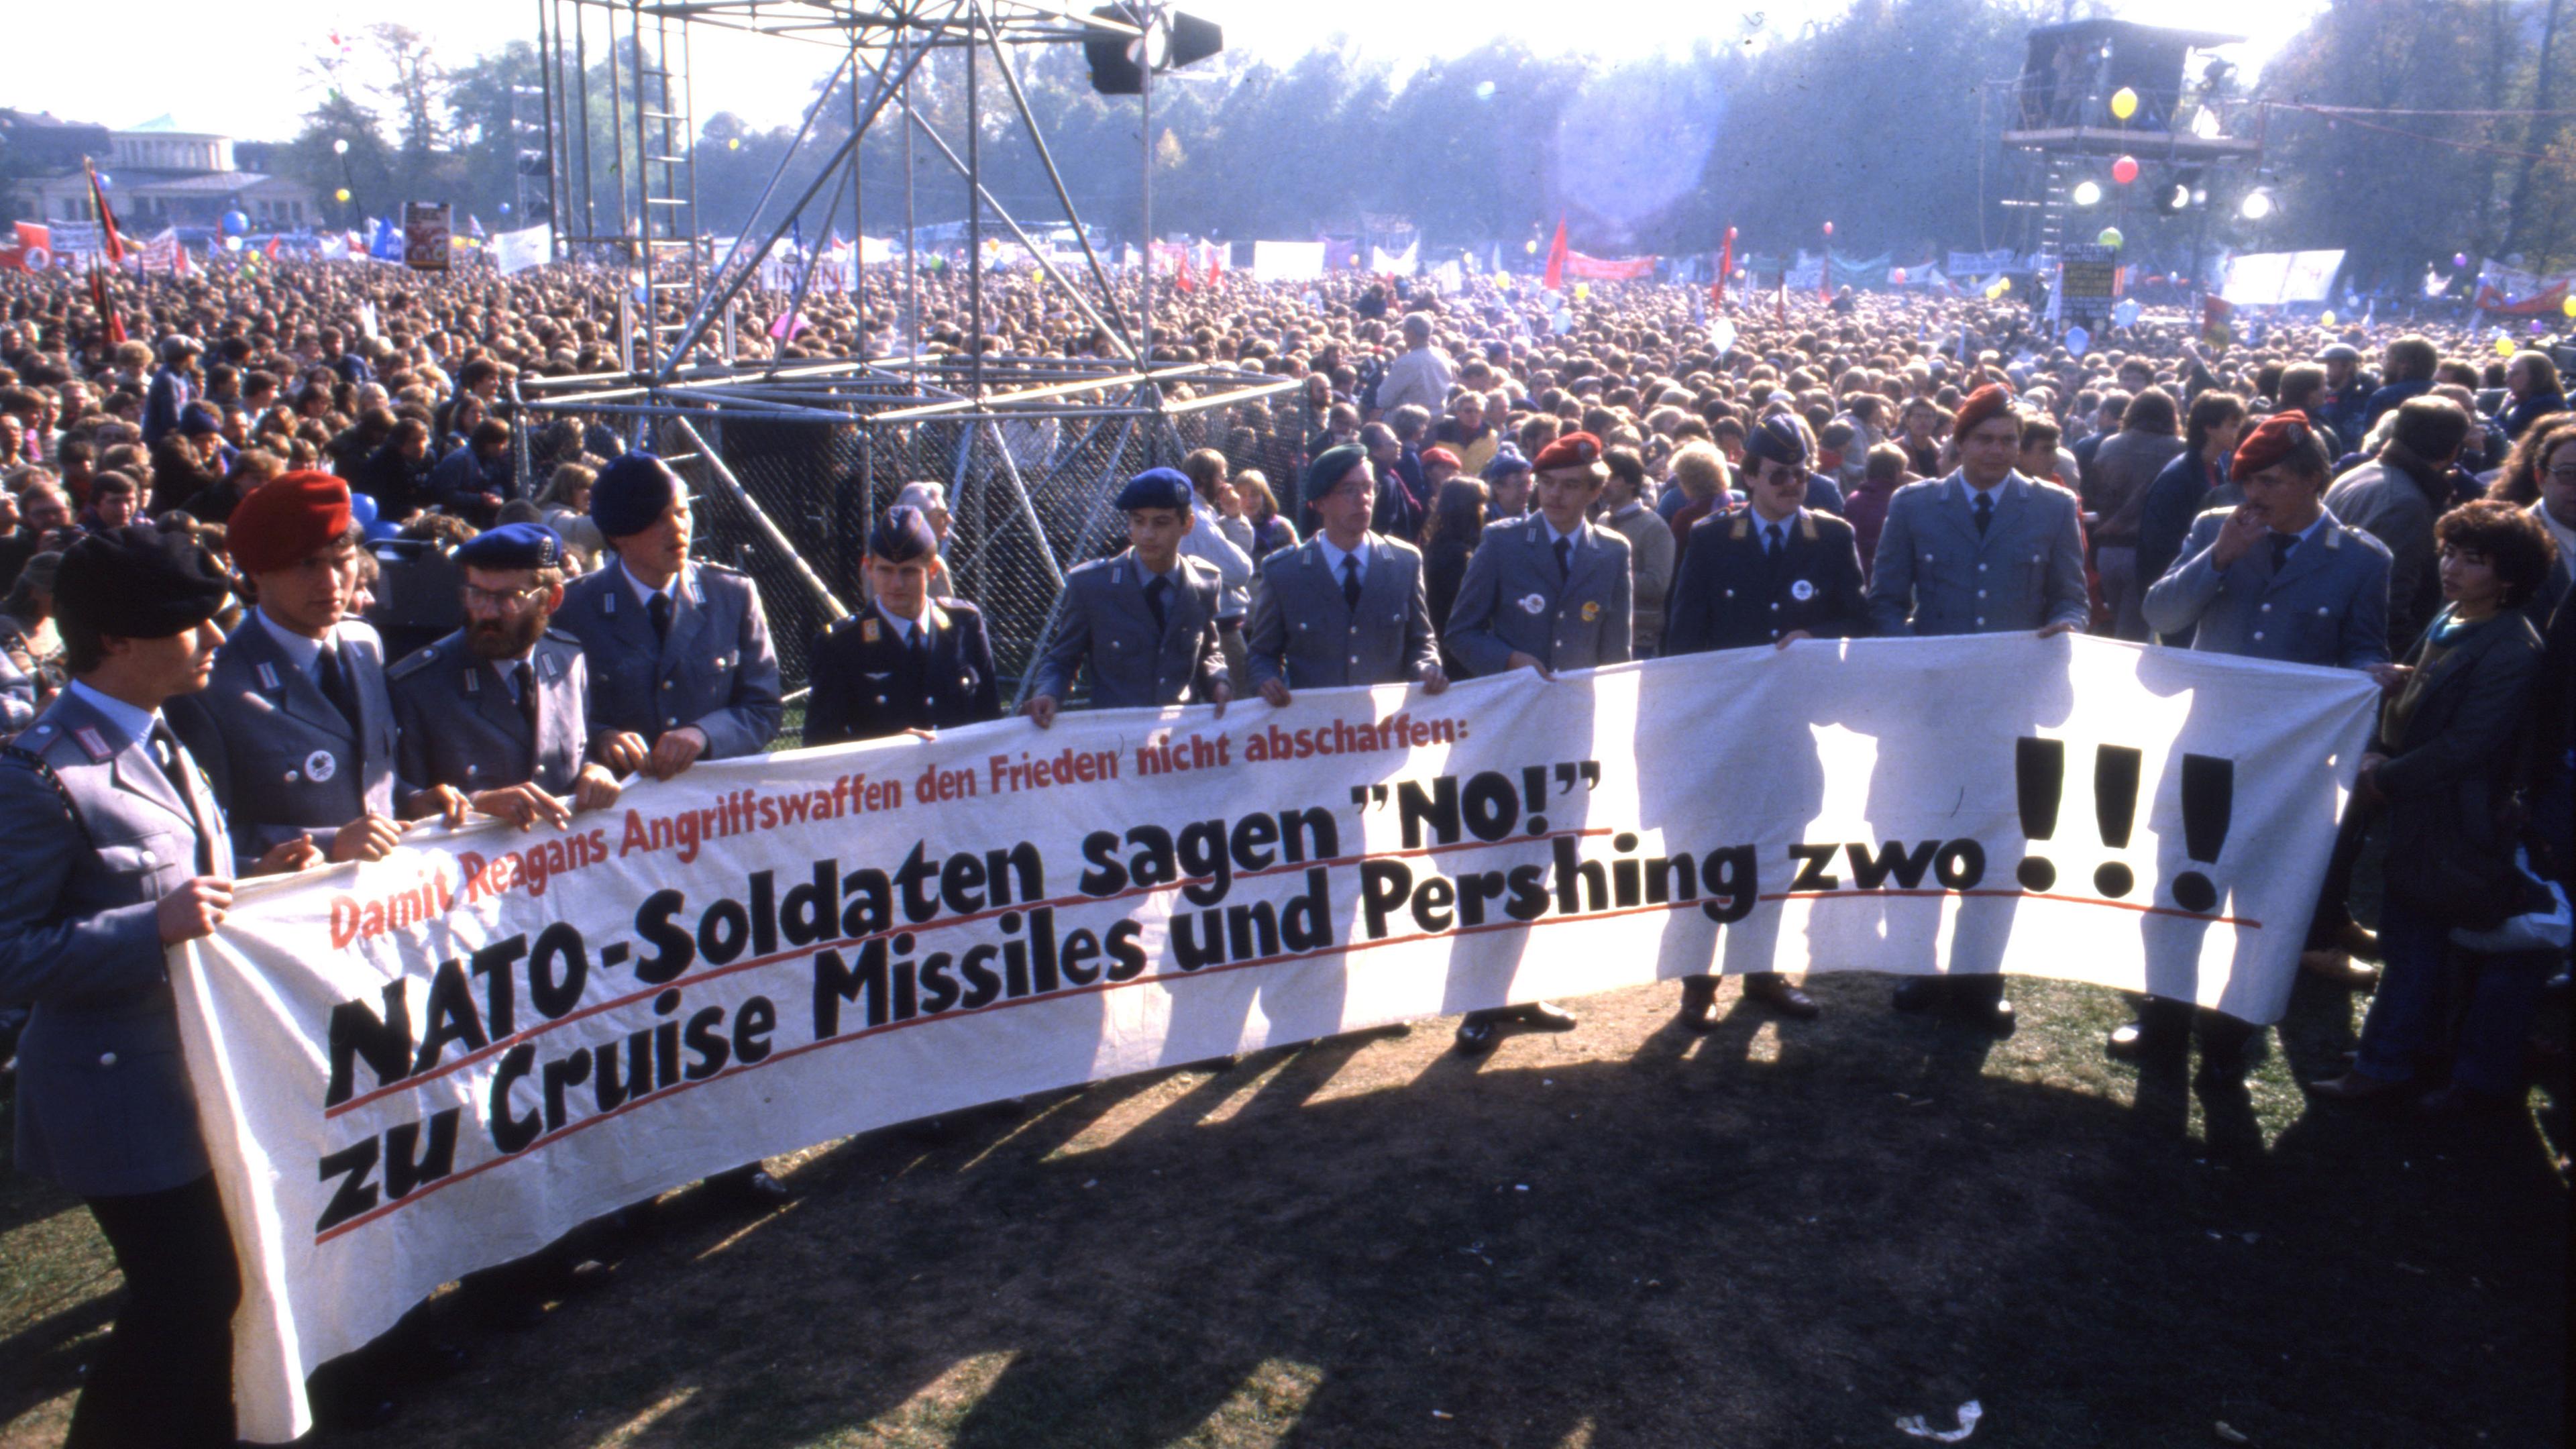 NATO-Soldaten am 22.10.1983 in Bonn bei einer Großkundgebung mit über 400.000 Teilnehmern gegen atomare Aufrüstung und die Stationierung von Cruise Missiles und Pershing 2 Raketen